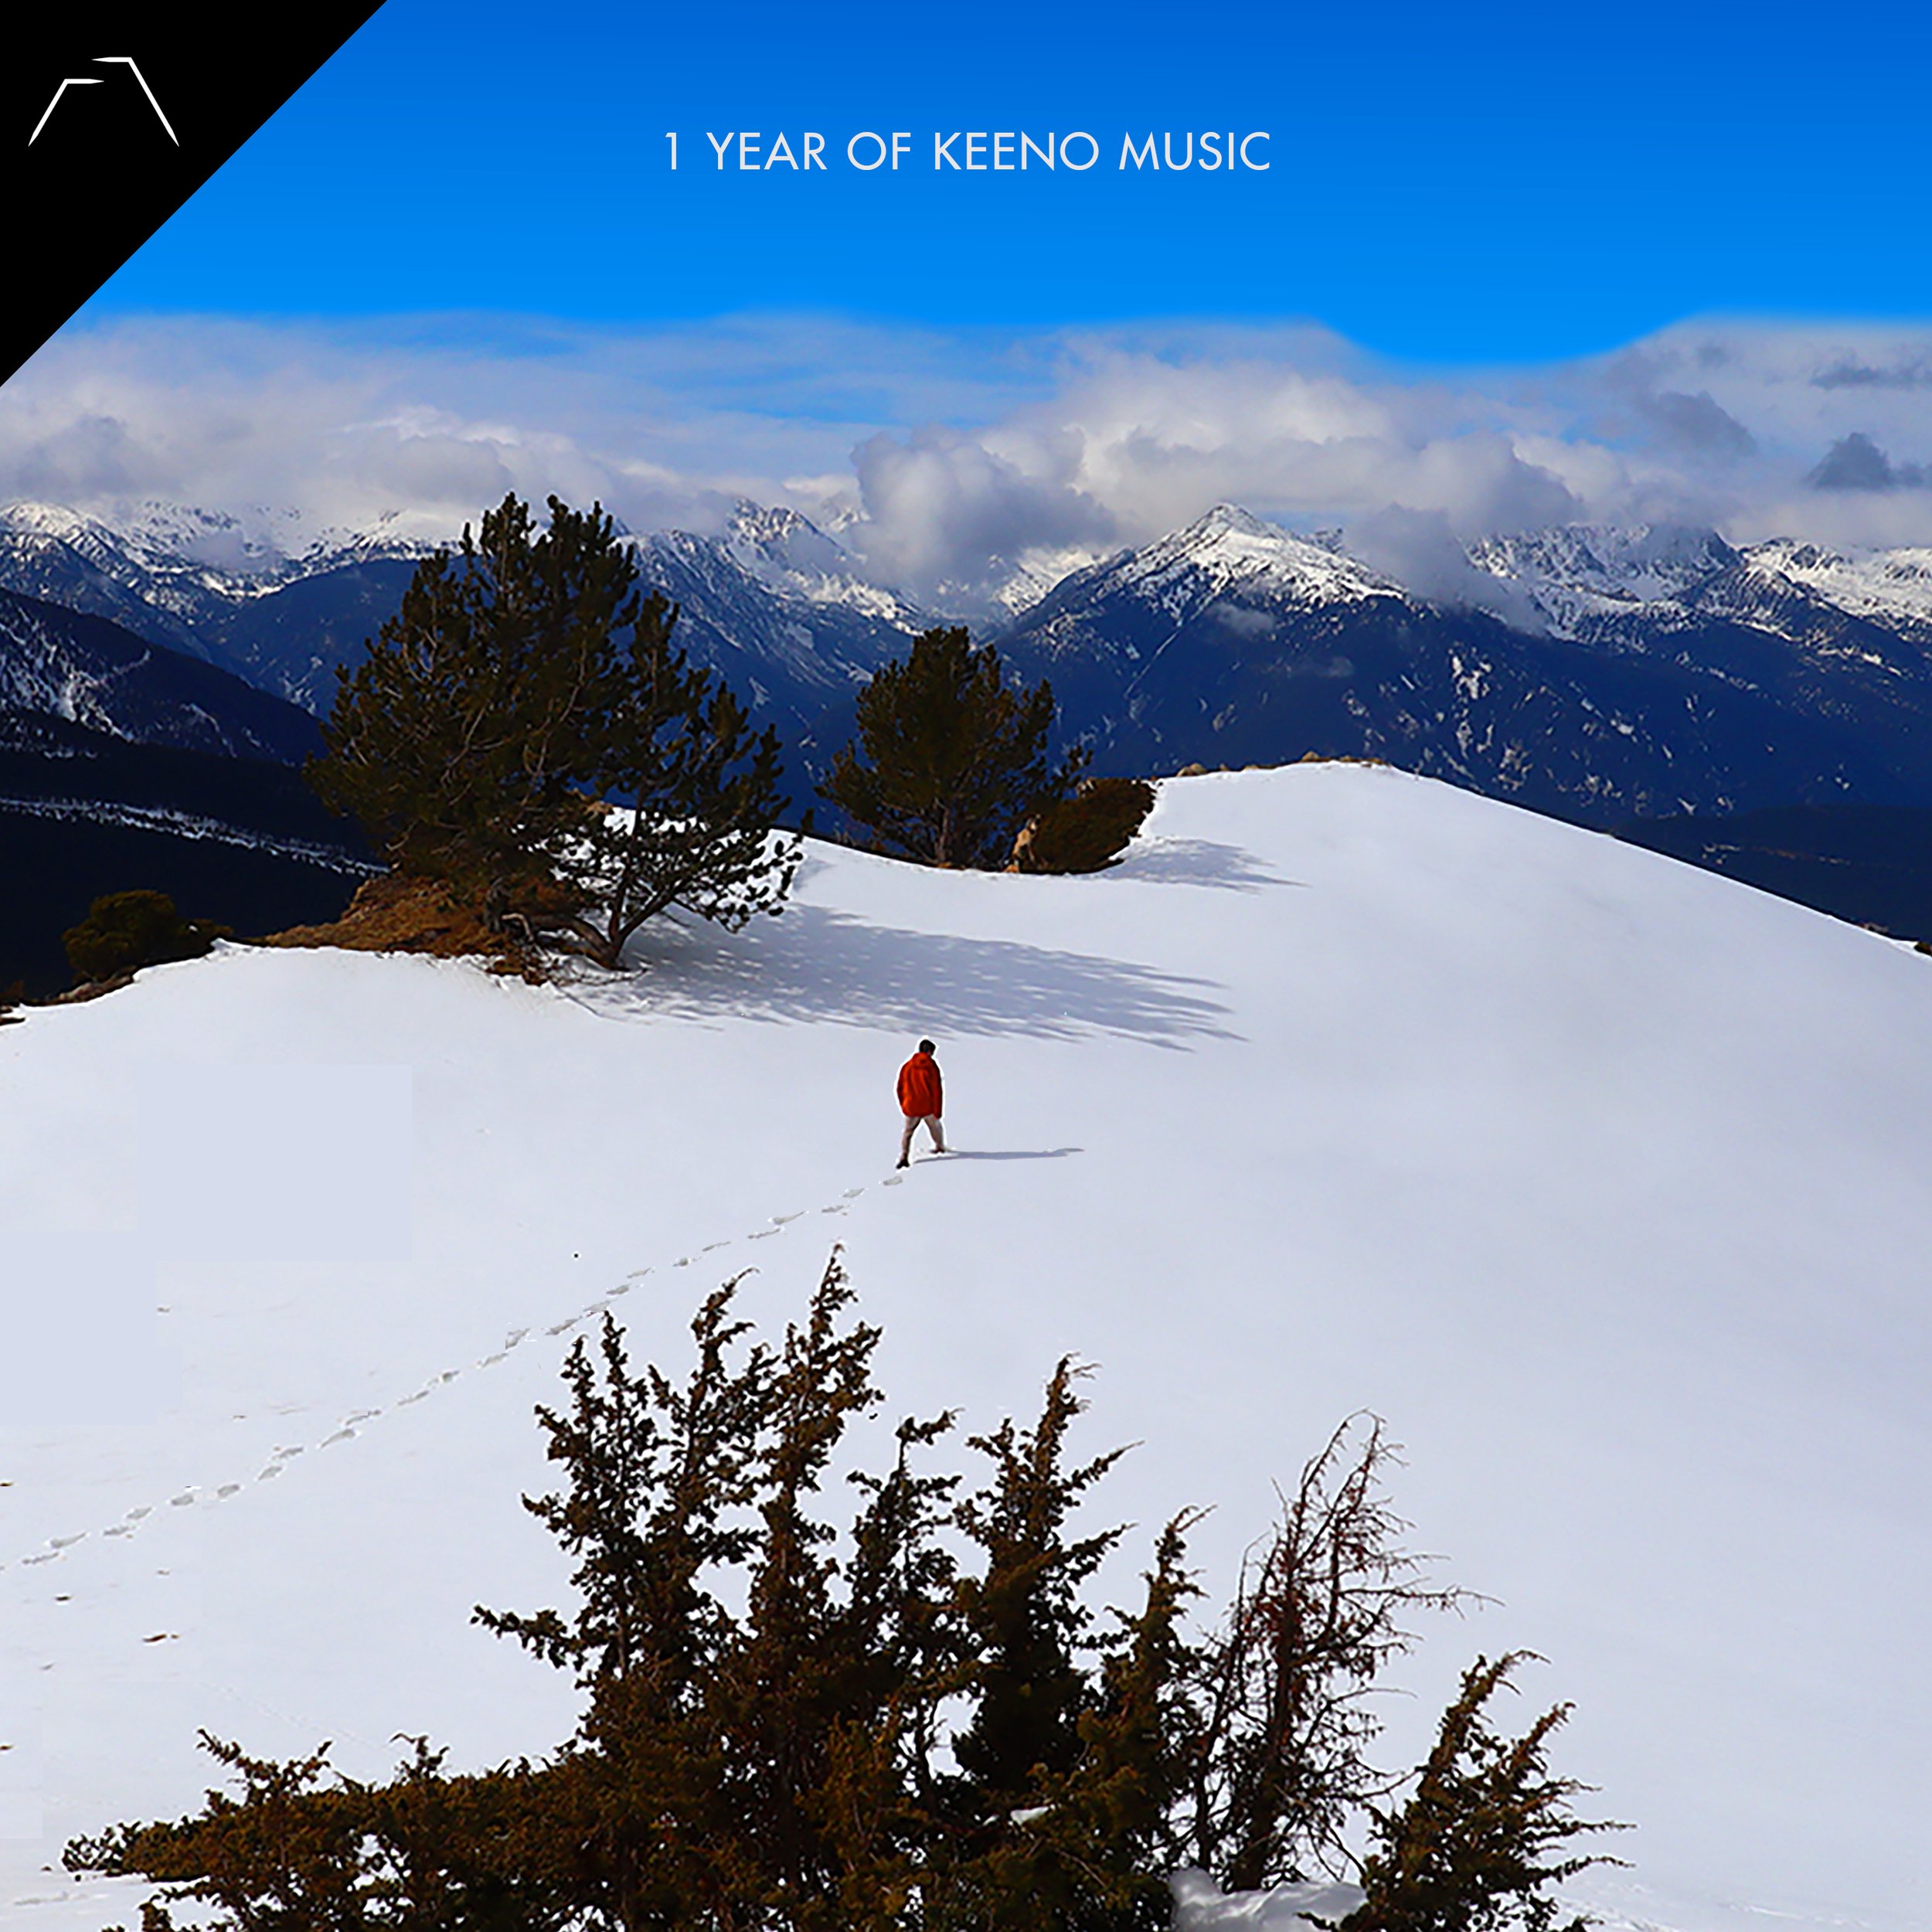 1 YEAR OF KEENO MUSIC